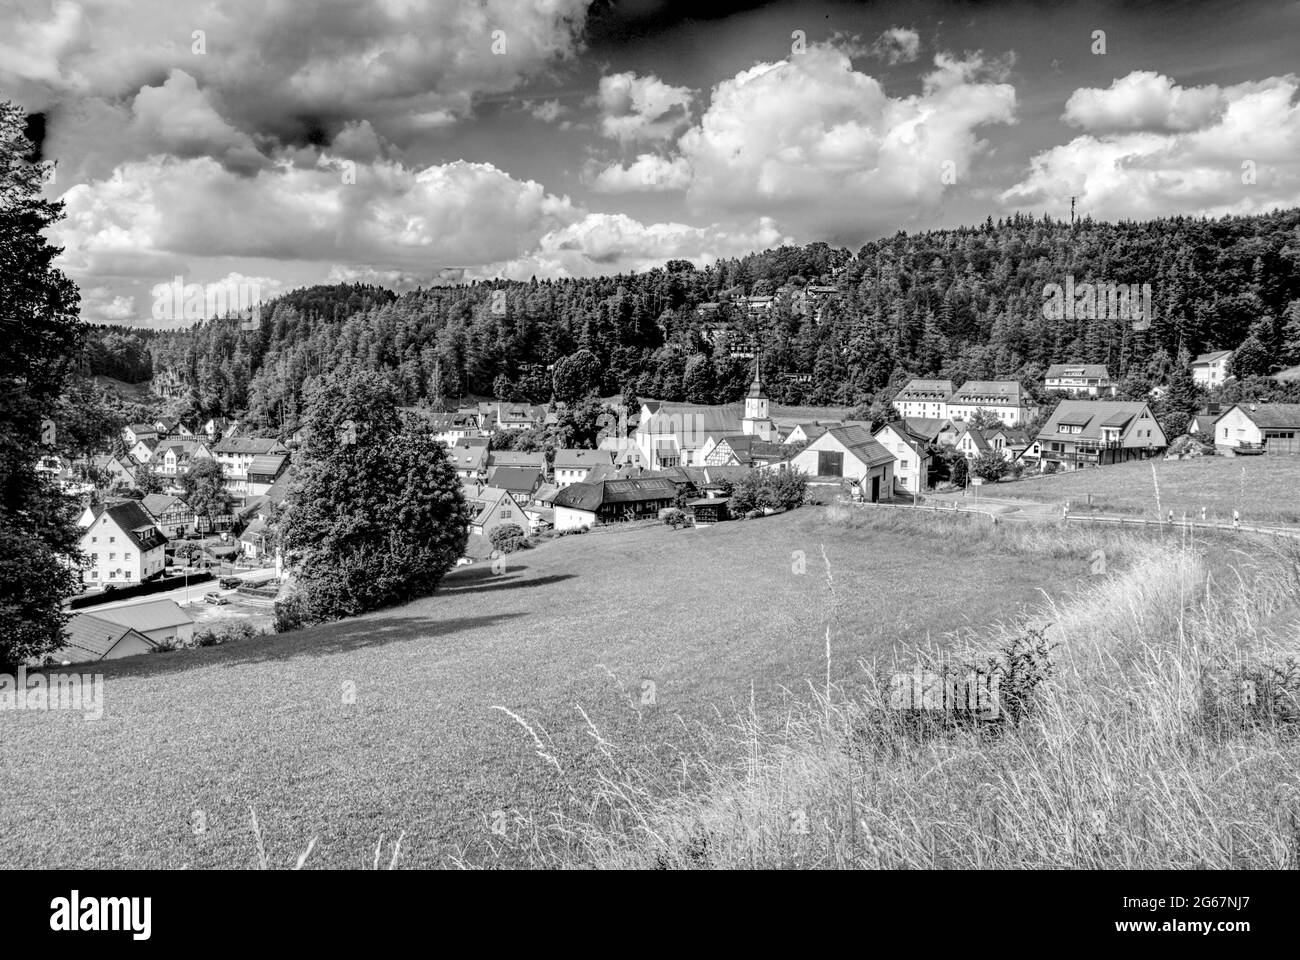 vista panoramica di un villaggio nei boschi in bianco e nero Foto Stock